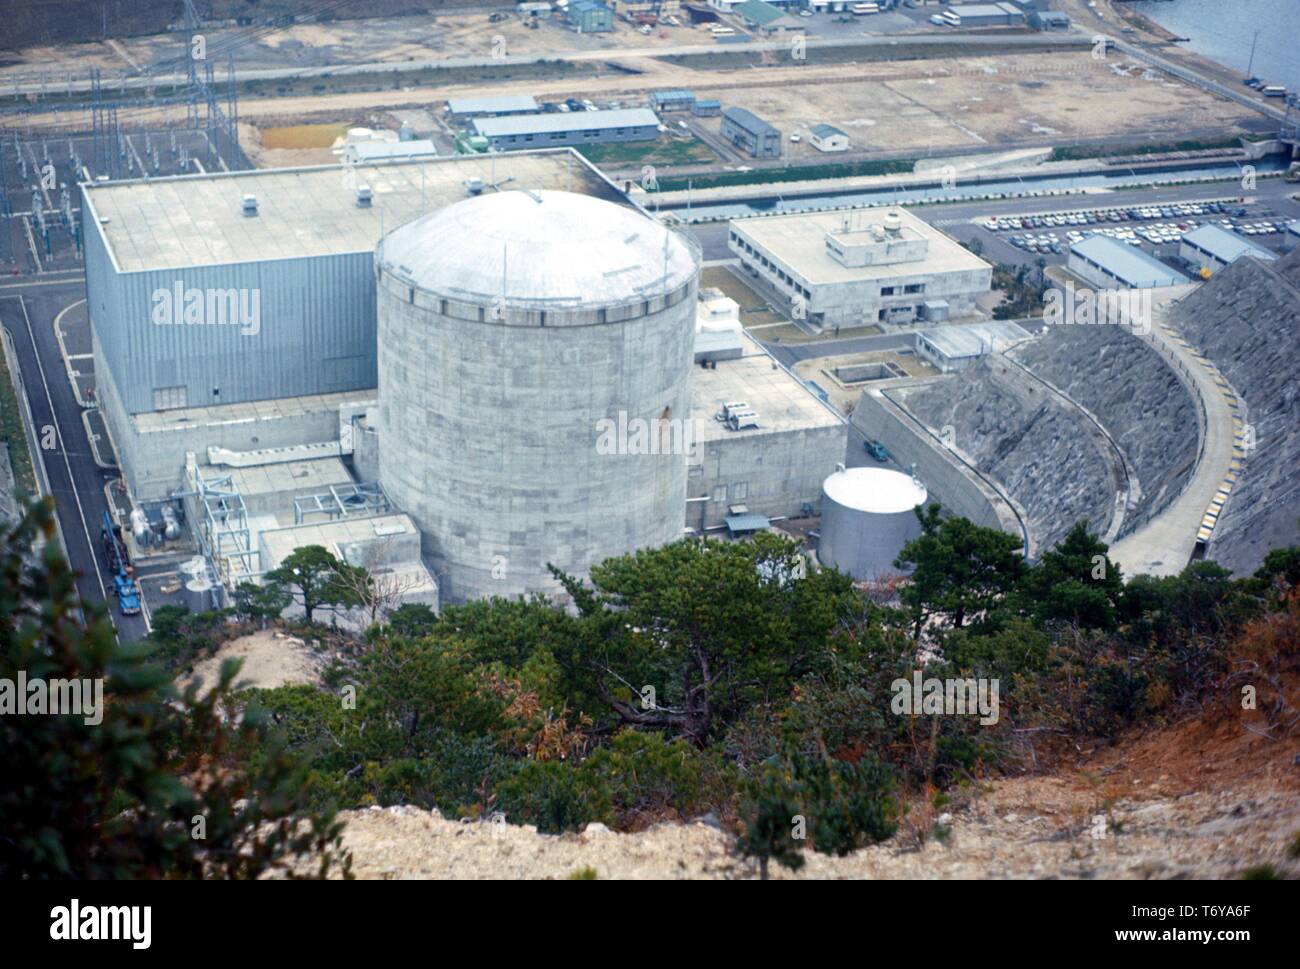 Luftaufnahme der Tsuruga Kernkraftwerk, von Japan Atomic Power Company (JAPCO), Tsuruga, Japan, 1970 betrieben. Mit freundlicher Genehmigung des US-Ministeriums für Energie. () Stockfoto